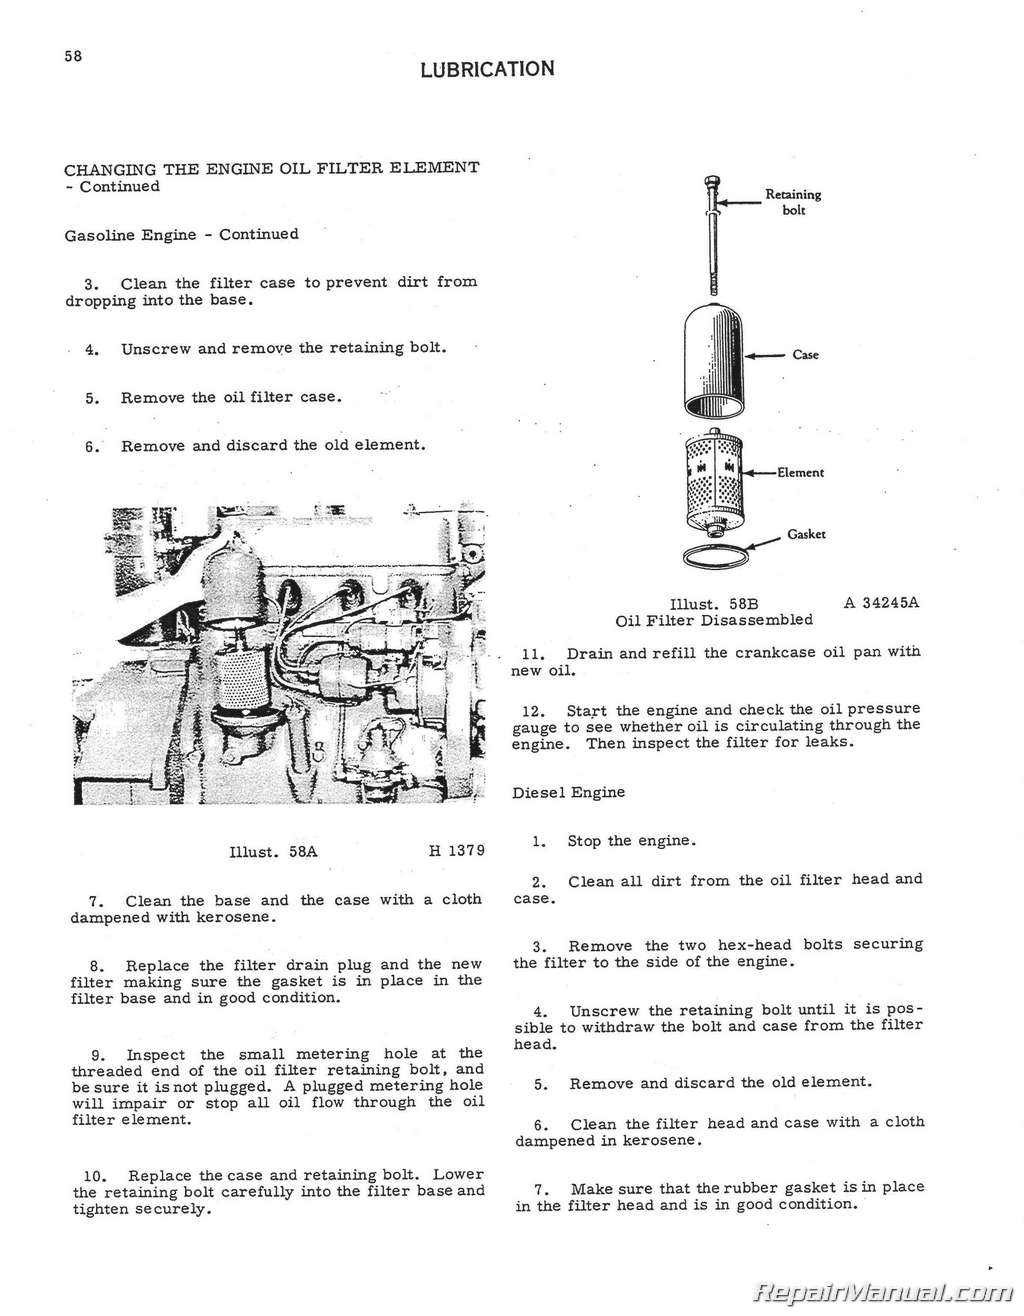 model1955 oliver wiring diagram